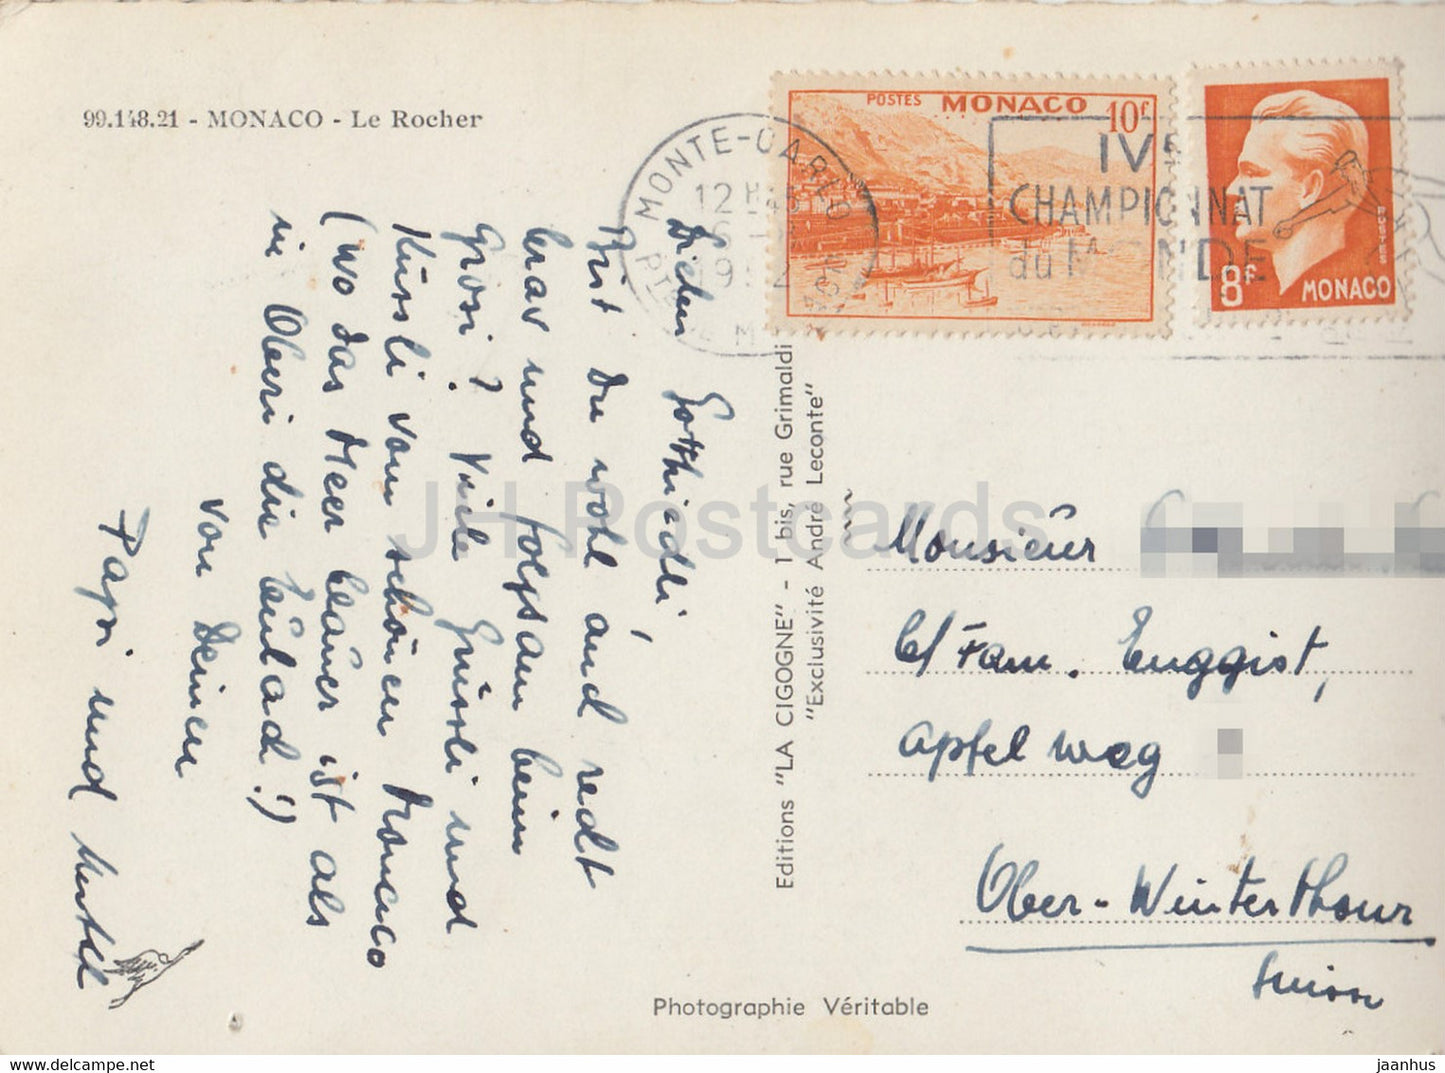 Le Rocher - alte Postkarte - 1952 - Monaco - gebraucht